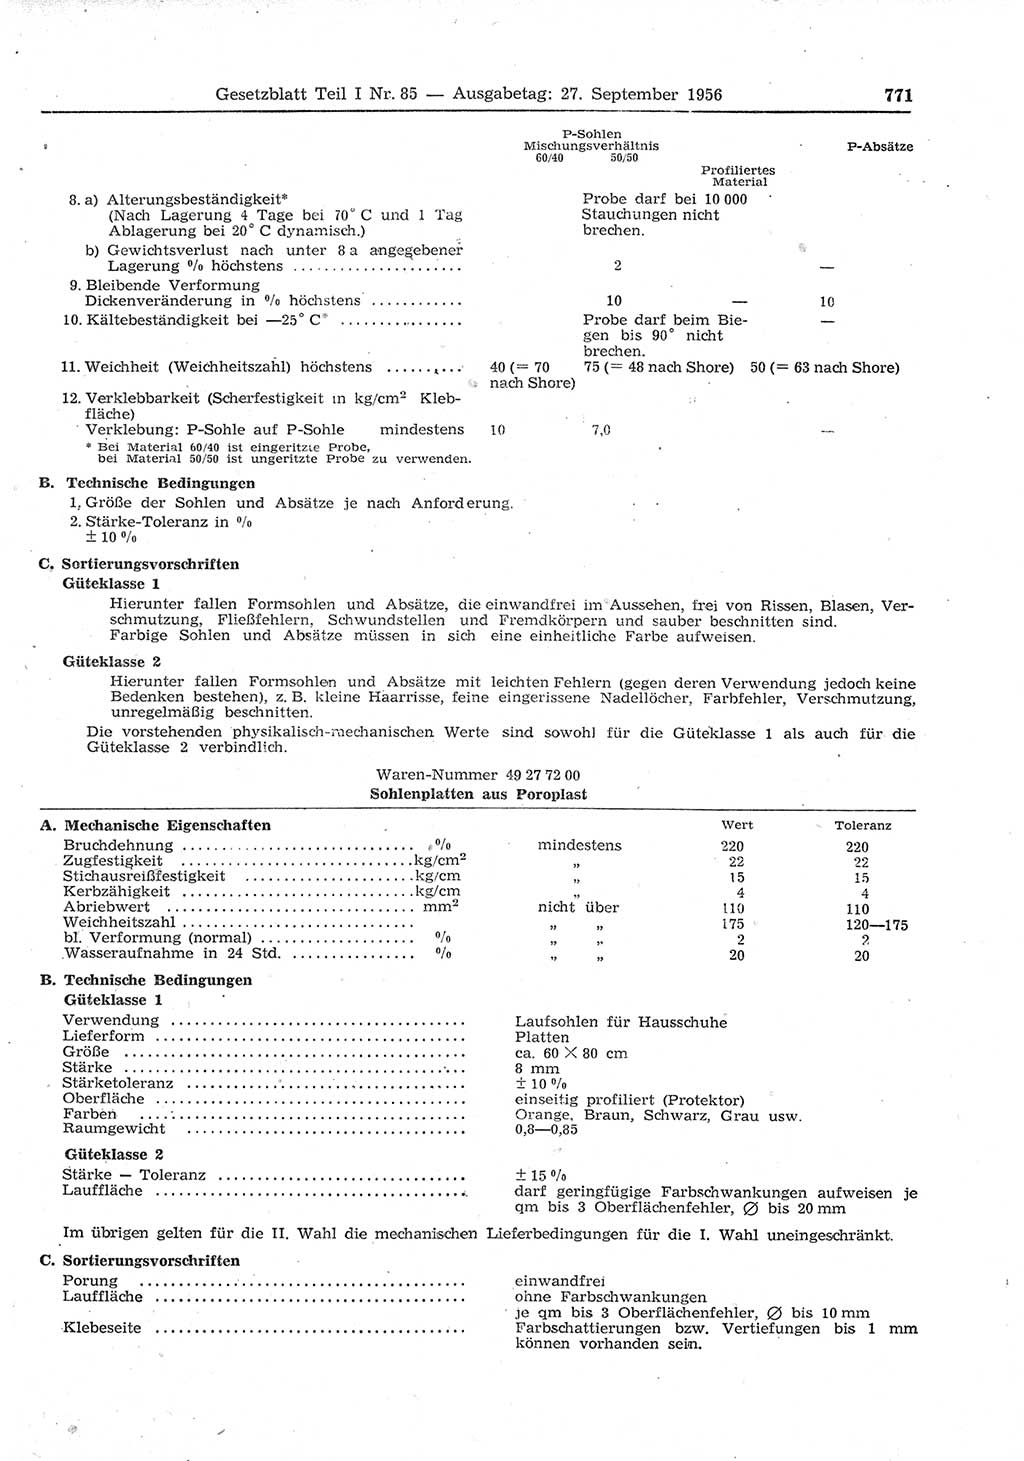 Gesetzblatt (GBl.) der Deutschen Demokratischen Republik (DDR) Teil Ⅰ 1956, Seite 771 (GBl. DDR Ⅰ 1956, S. 771)